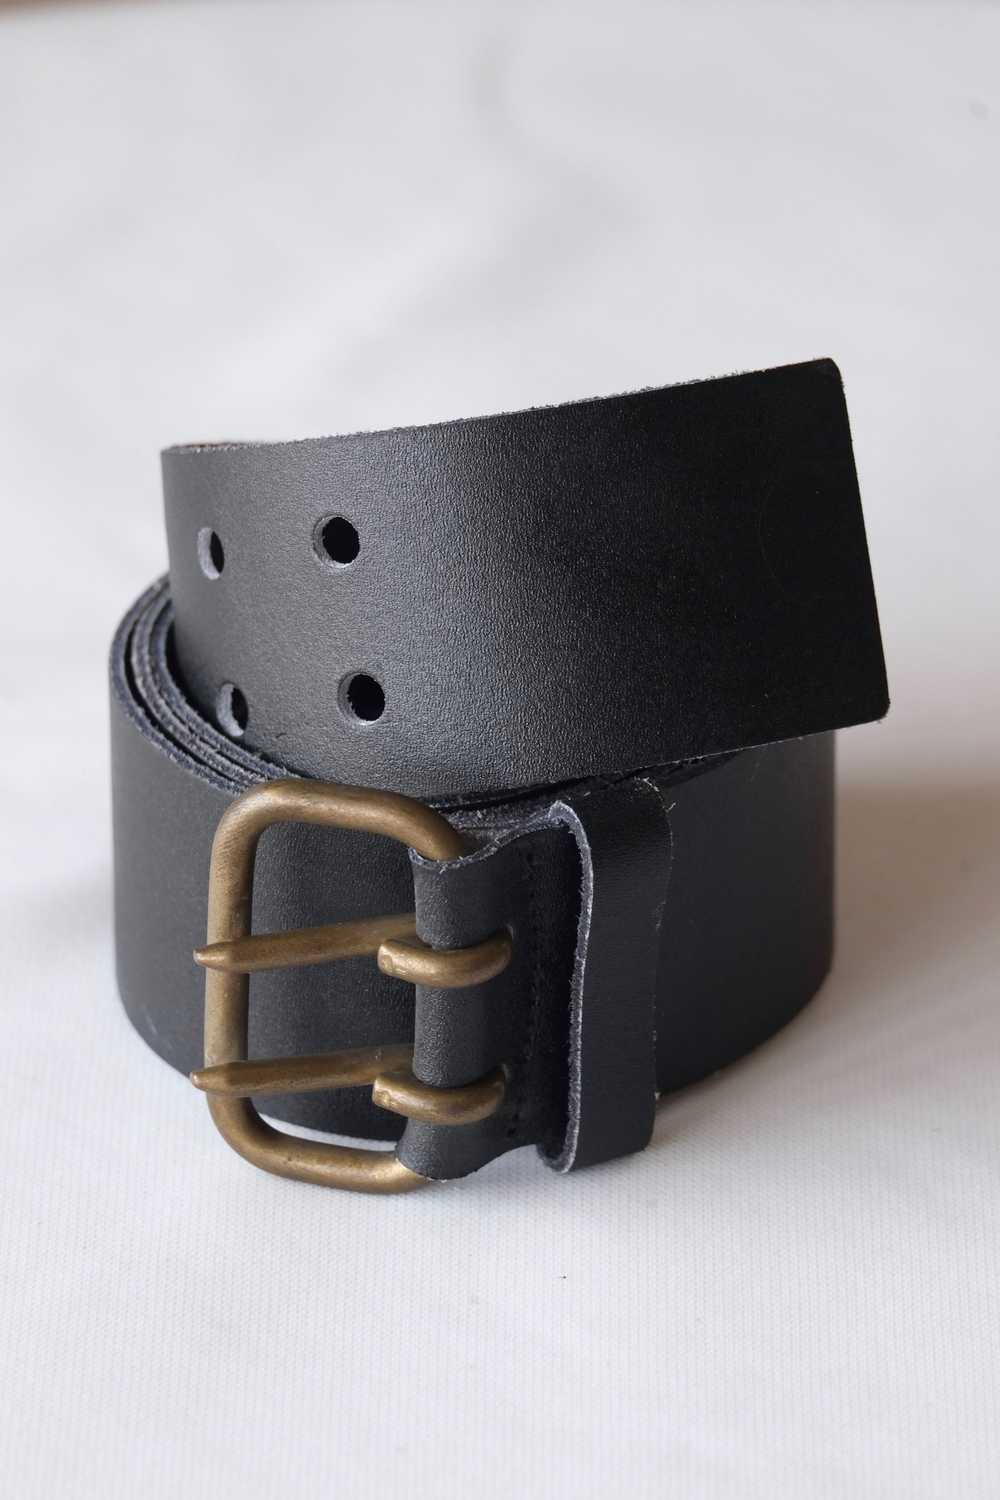 L'AIGLON Brittle Double Prong Leather Belt - image 2